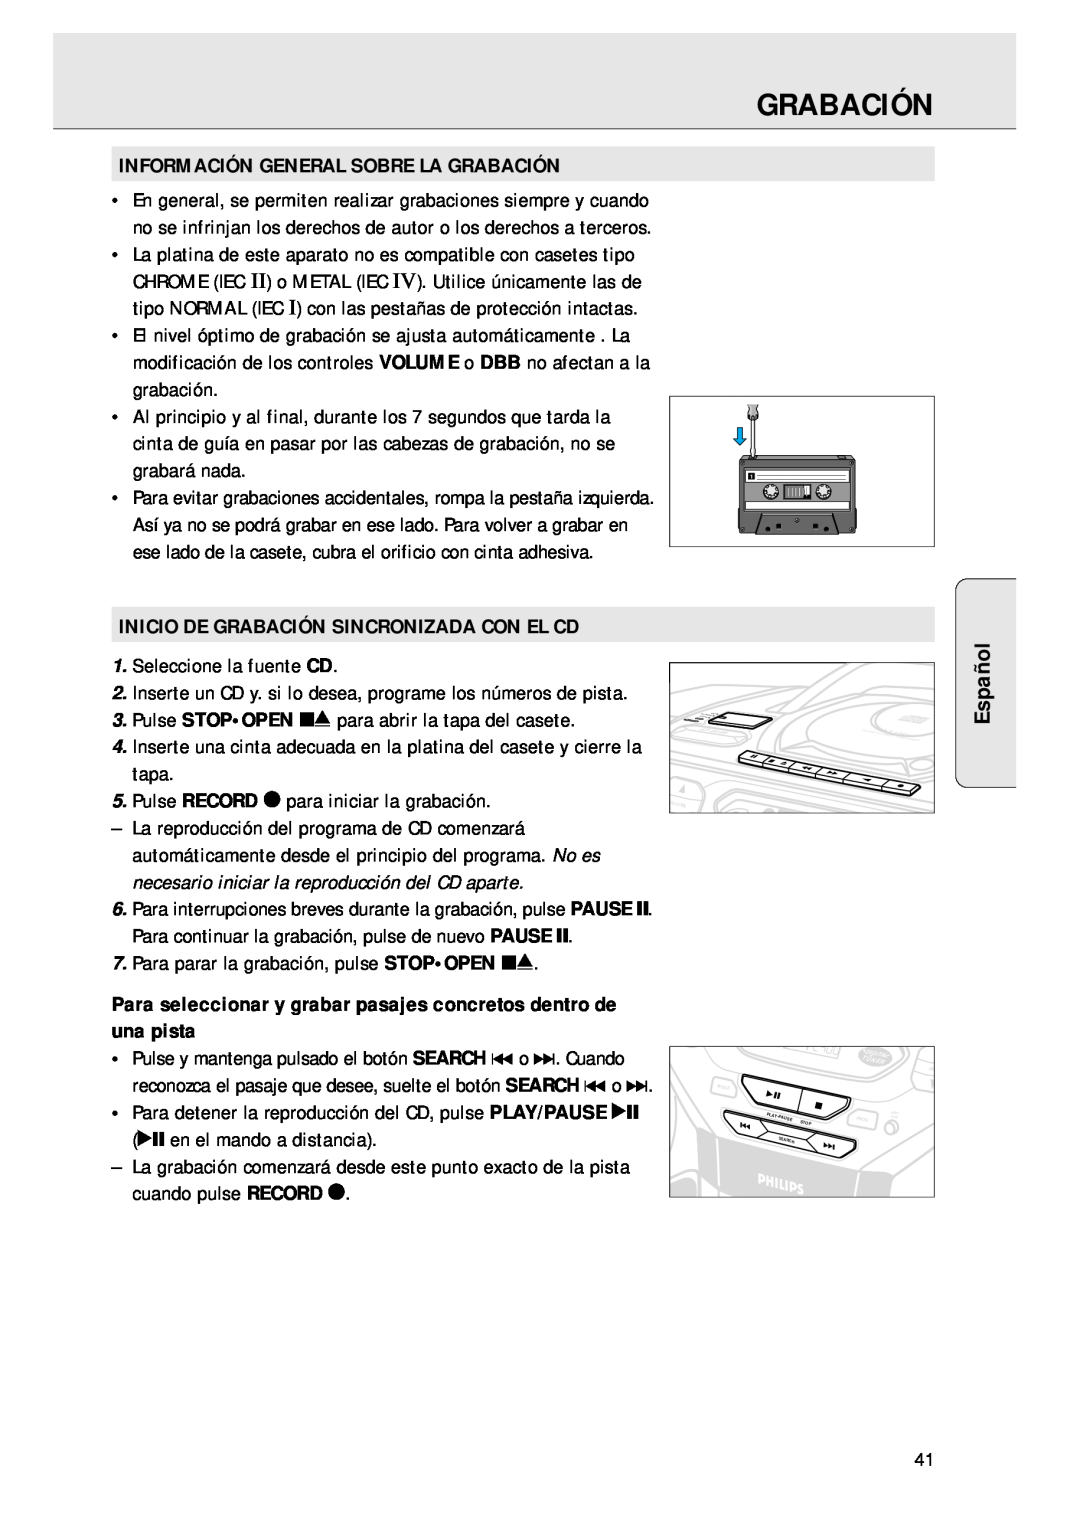 Magnavox AZ 1045 manual Información General Sobre La Grabación, Inicio De Grabación Sincronizada Con El Cd, Español 